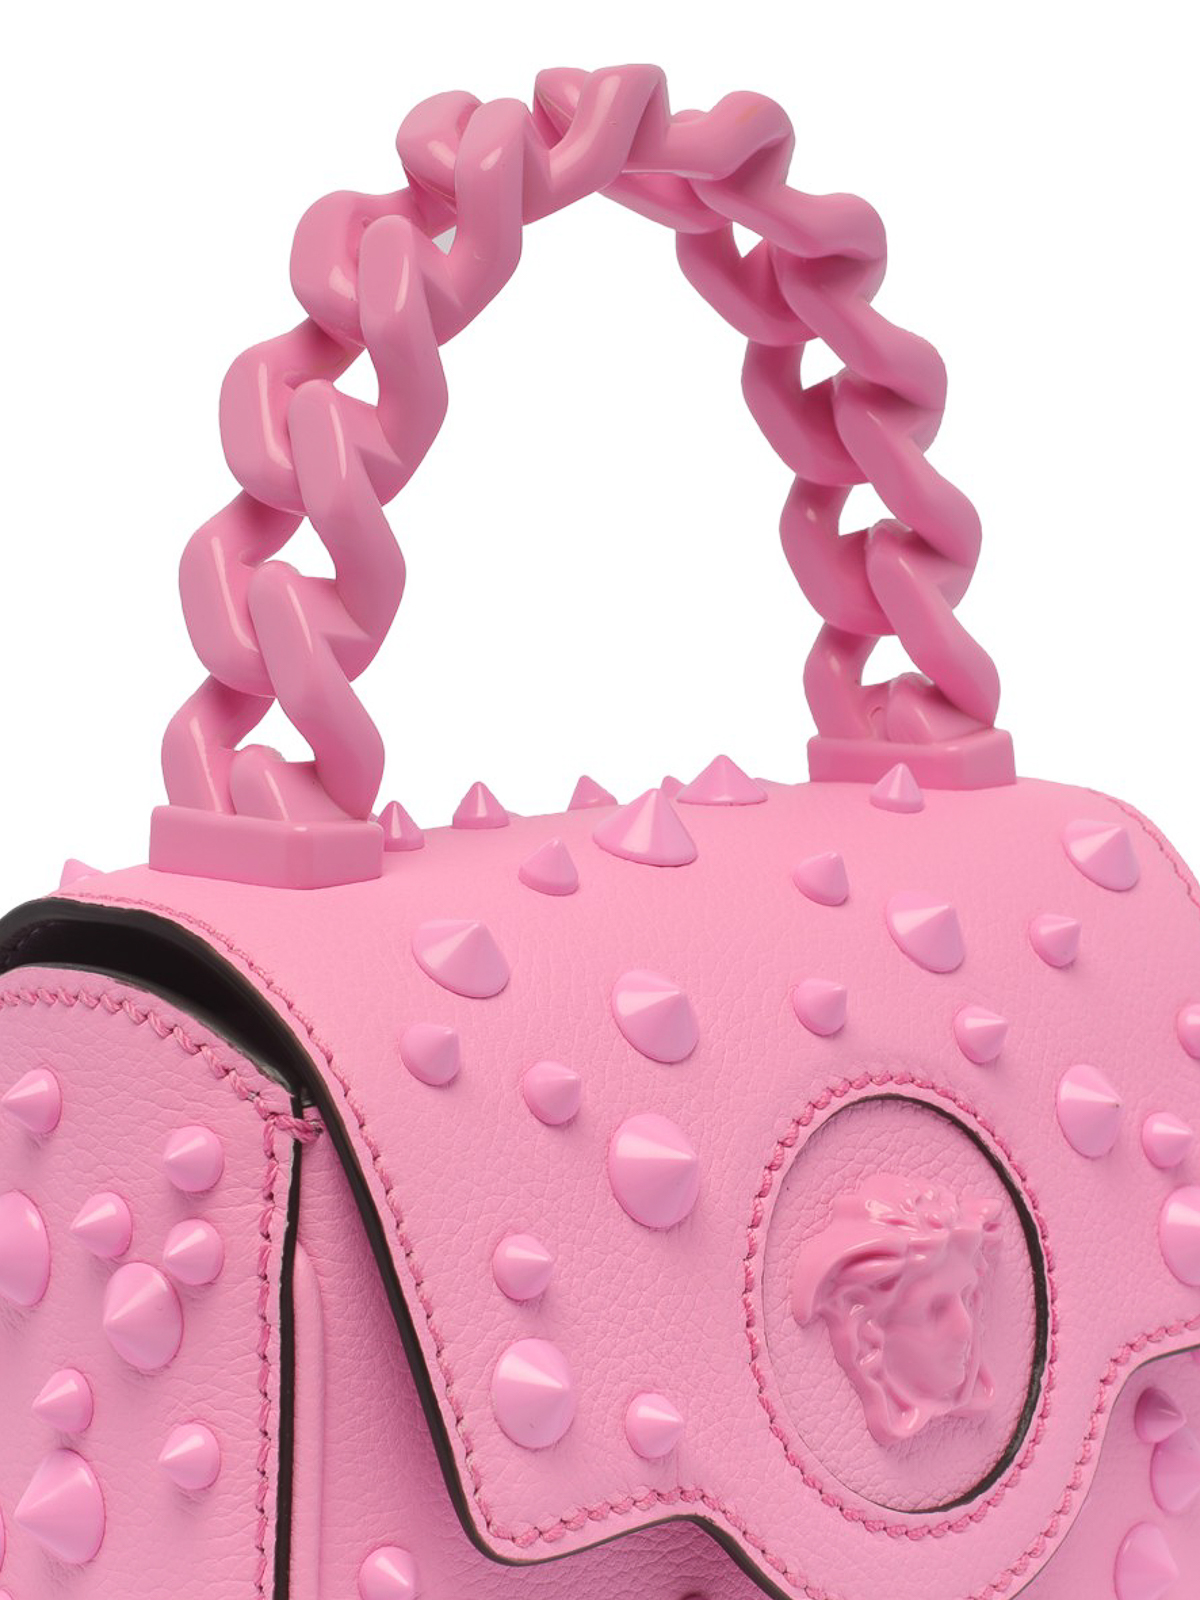 Versace Pink Leather Medusa Backpack